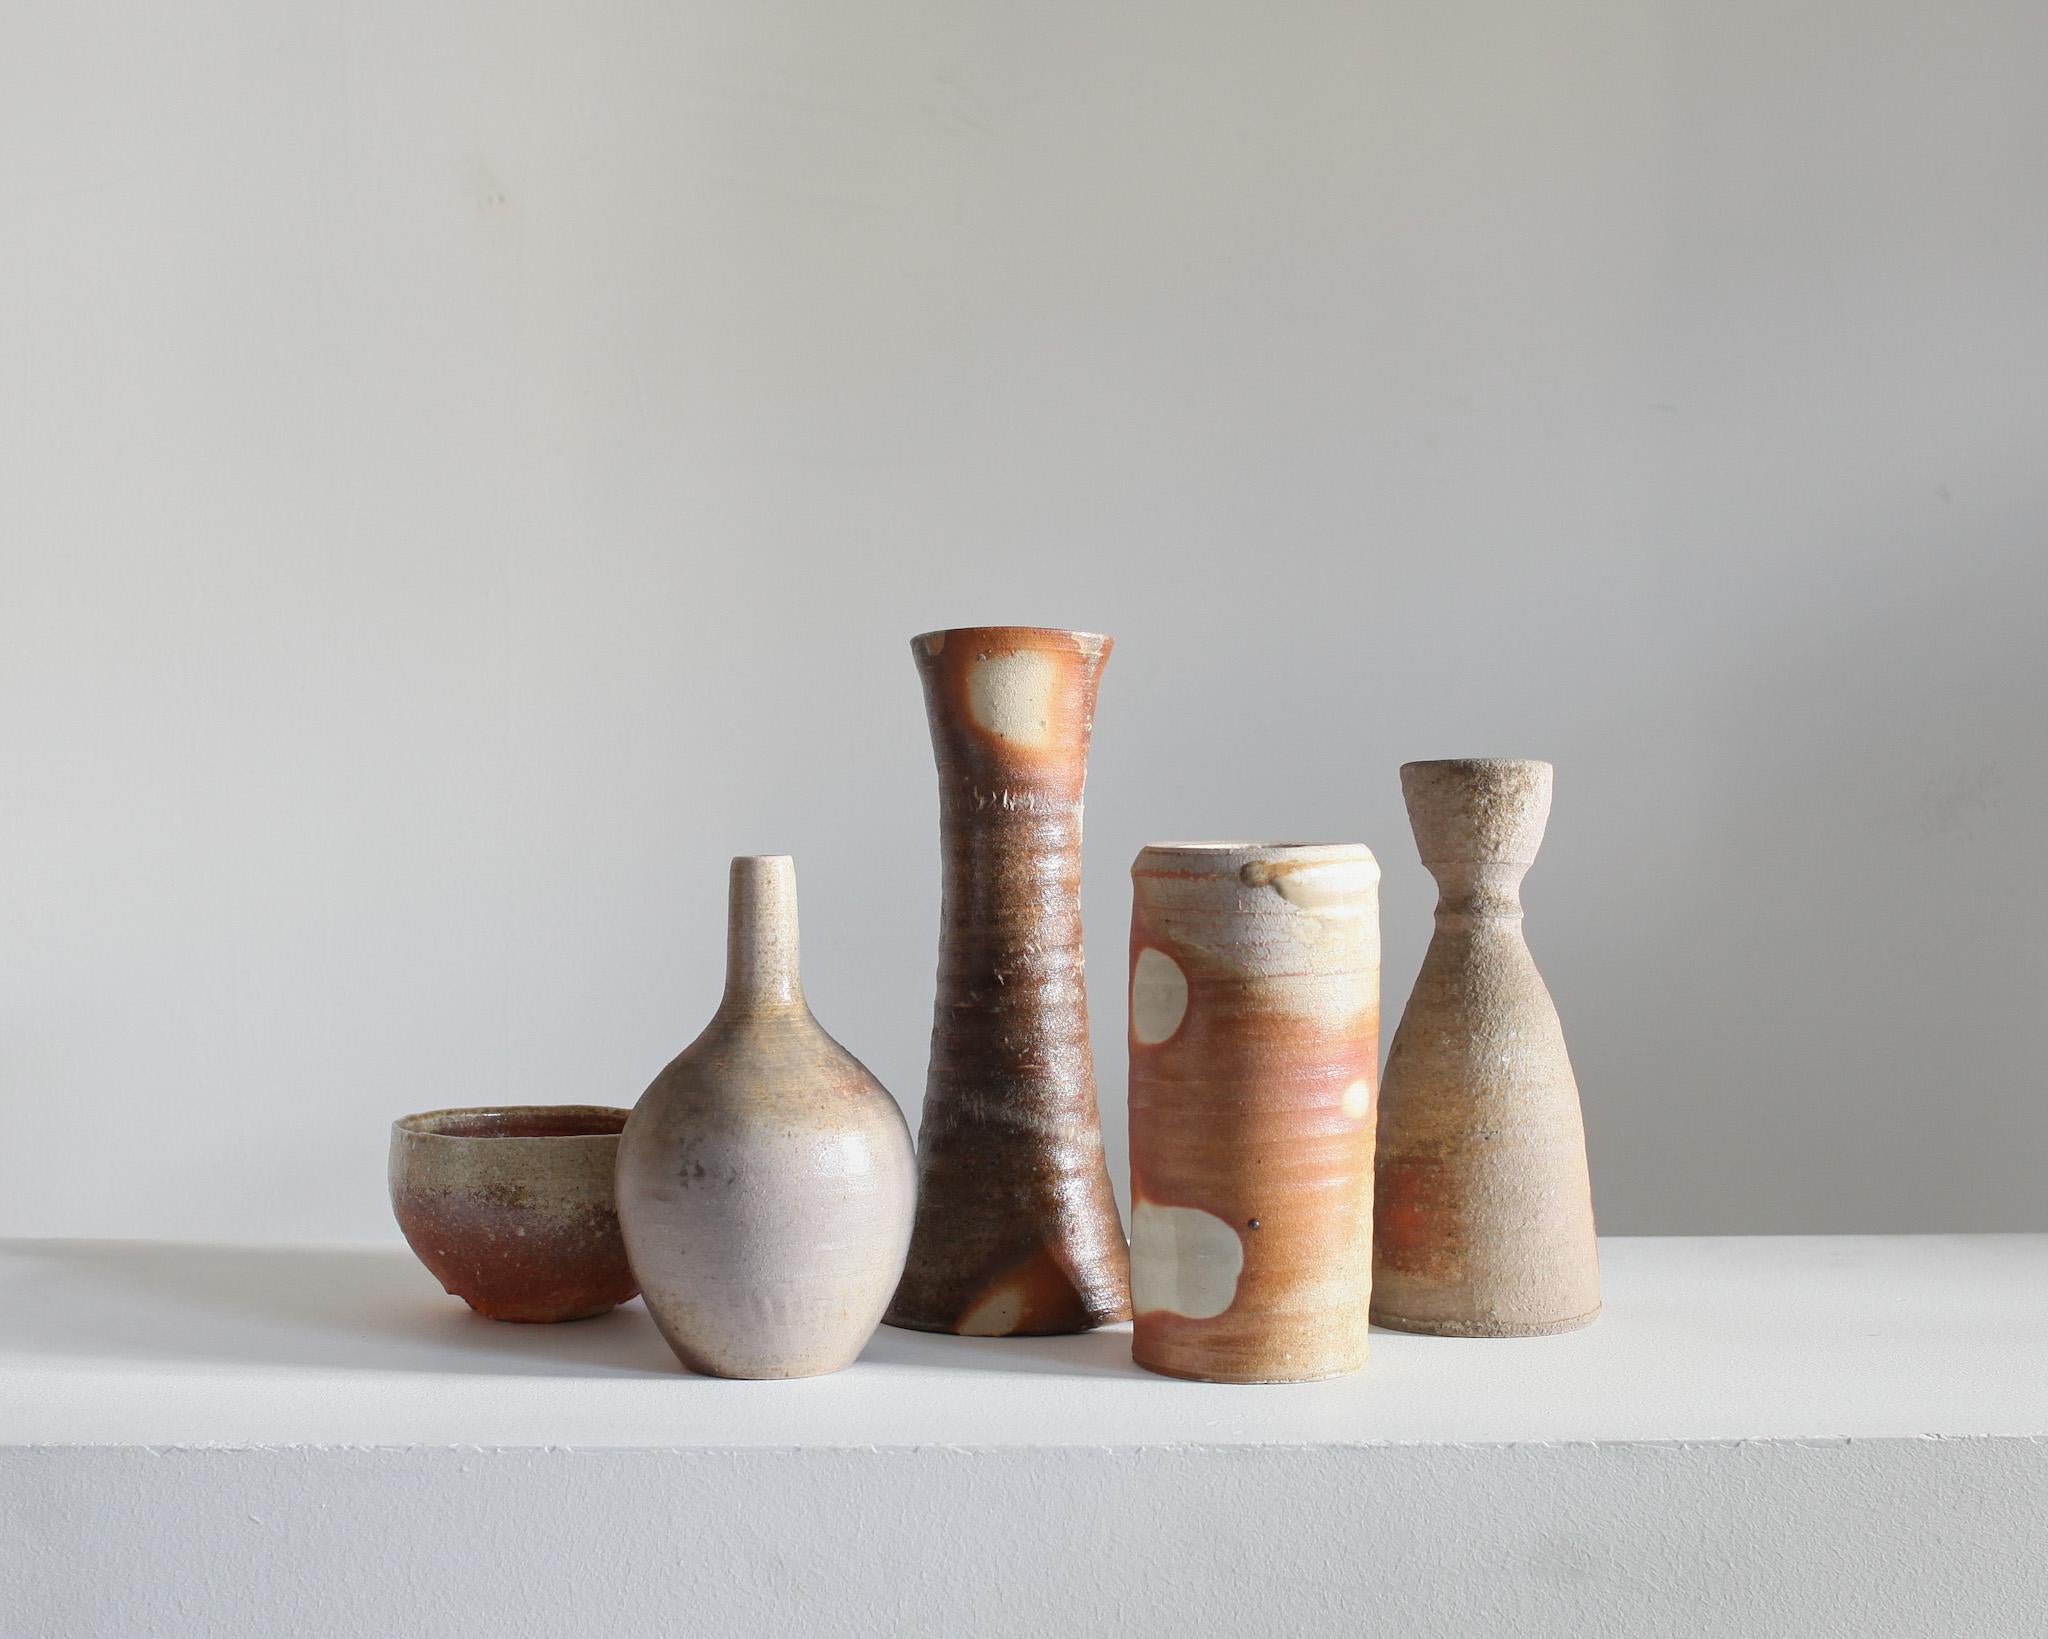 Eine Sammlung von fünf einzigartigen Steingut-/Keramikgefäßen aus der berühmten Töpferstadt Mashiko, Japan.

Sie stammen aus dem ehemaligen Studio eines Töpfers aus Mashiko.

Diese taktilen Gefäße sind alle von einer erdigen Wabi-Sabi-Ästhetik